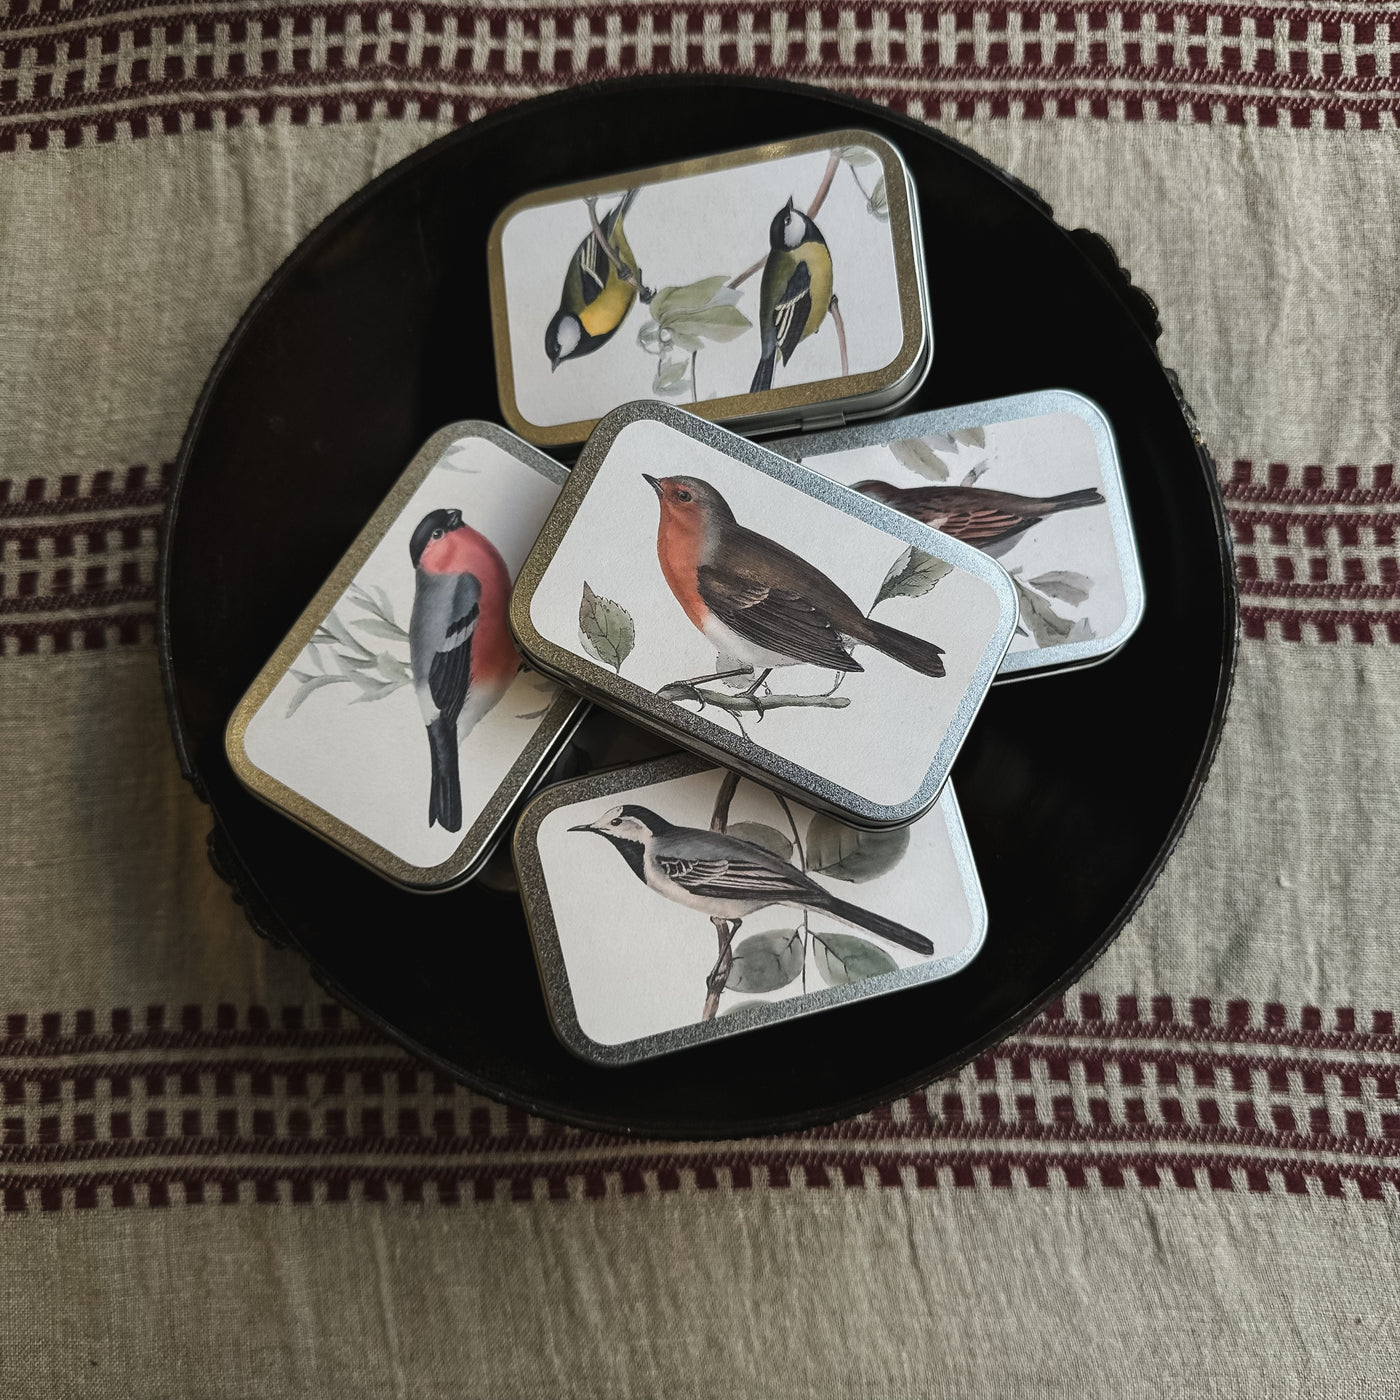 Lata Pastilha - Arte Maçã/Pássaros Nórdicos